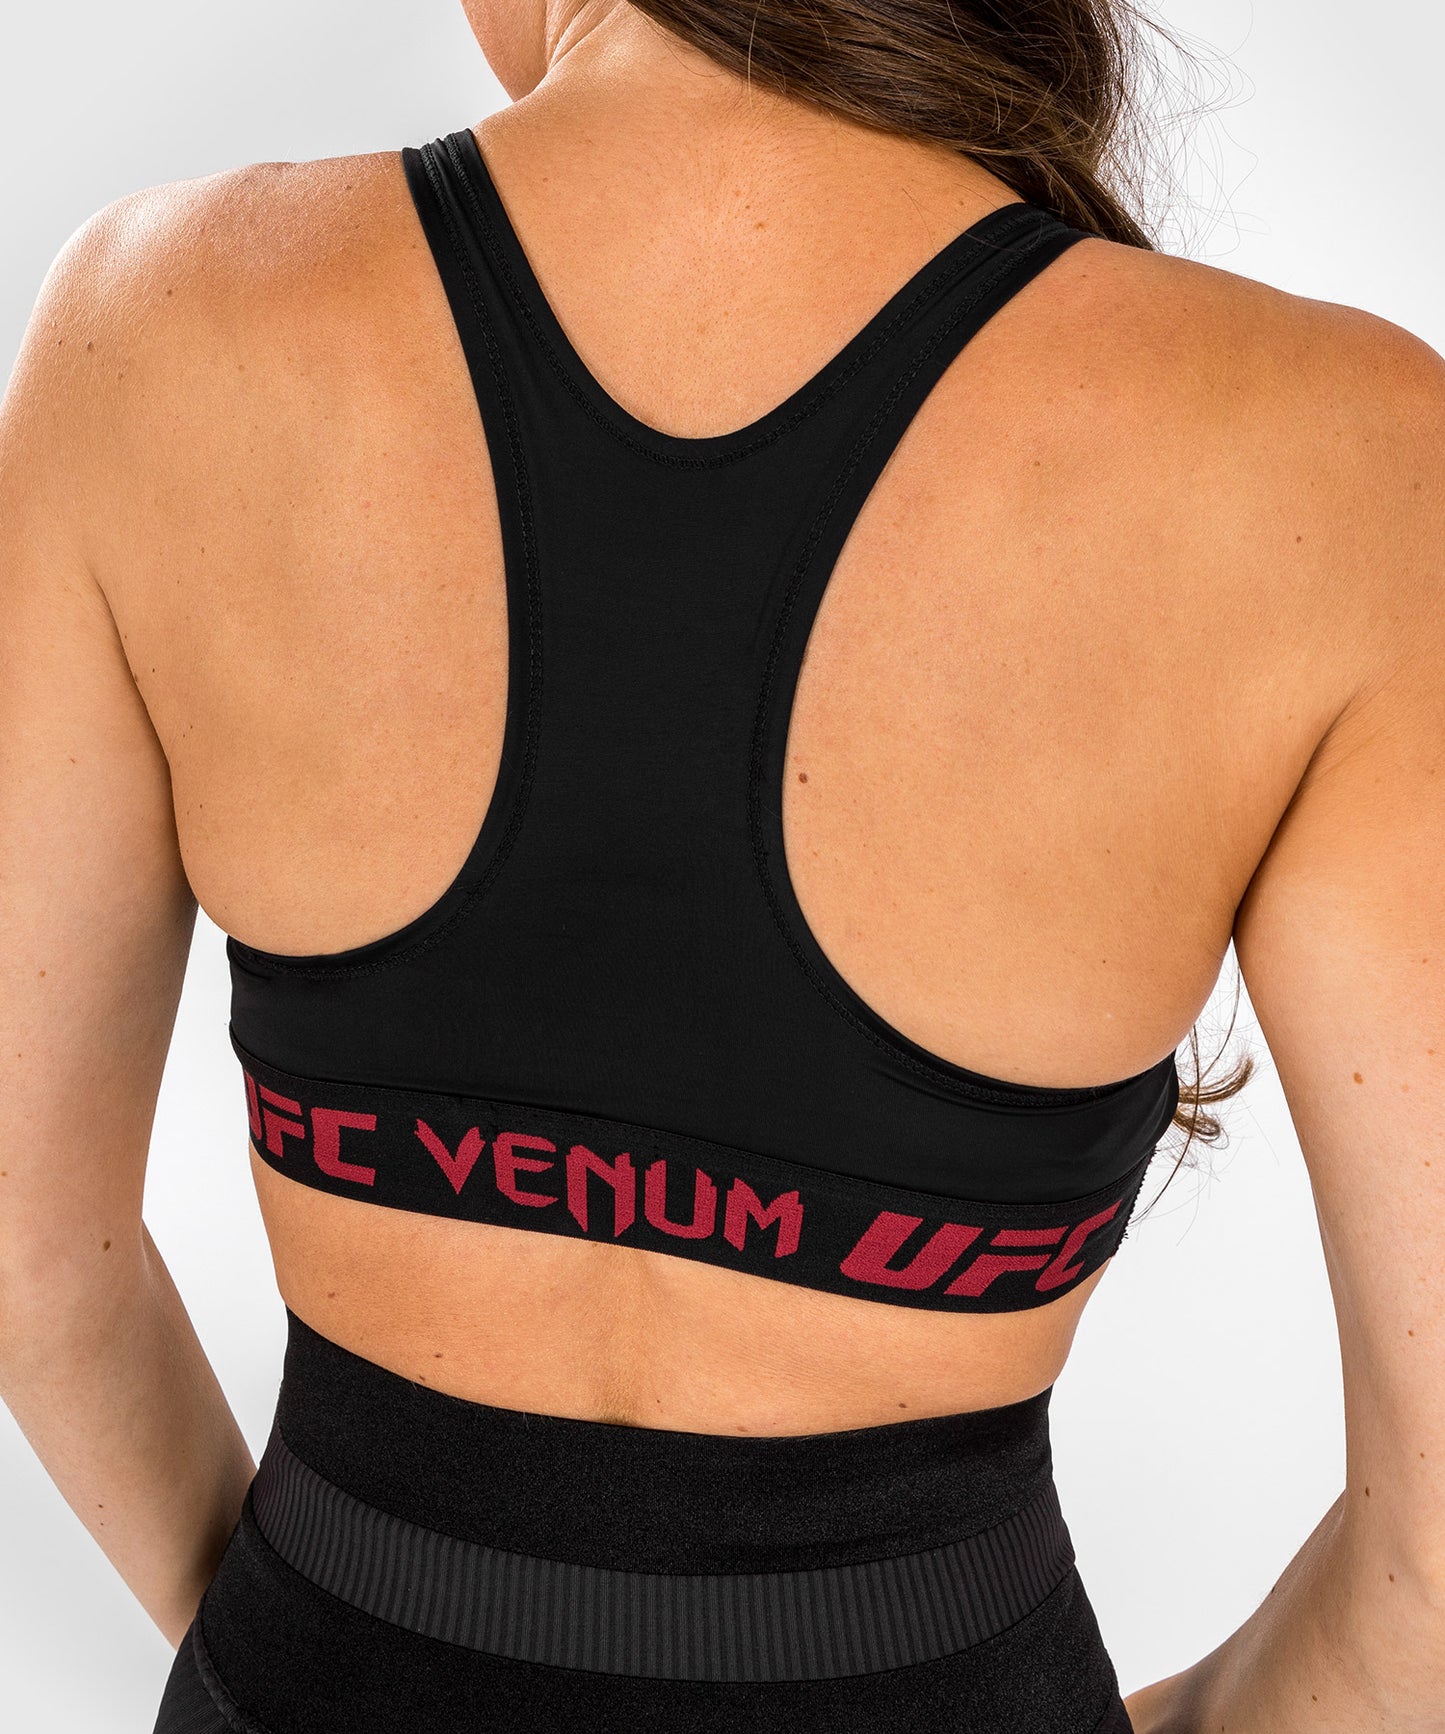 Sous-vêtement de Pesée Femme UFC Venum Authentic Fight Week - Noir